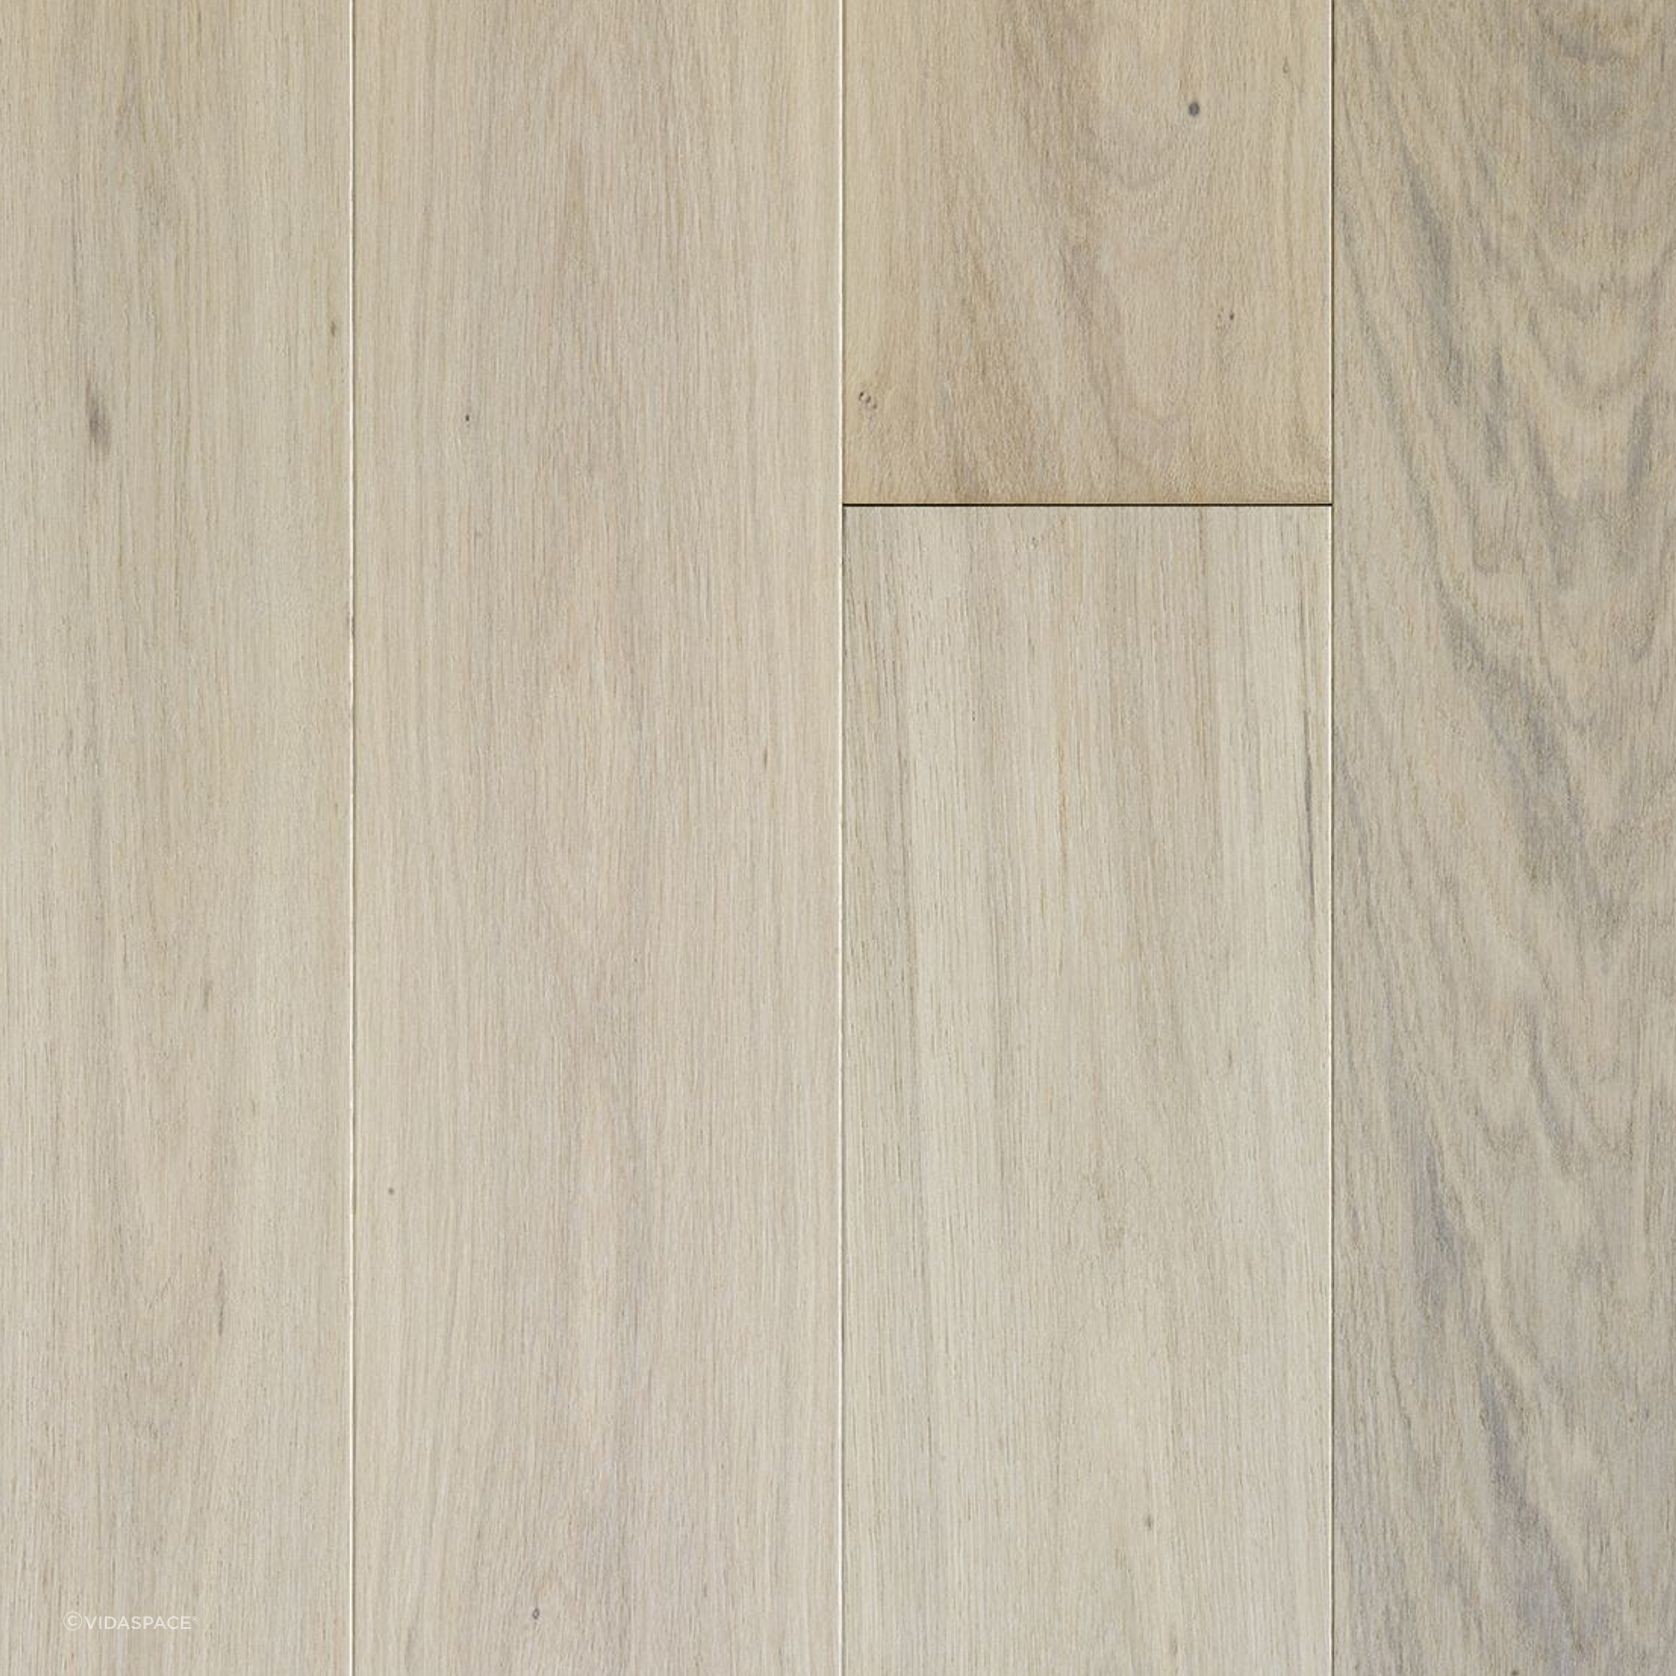 Bradbury PurePlank Timber Flooring gallery detail image